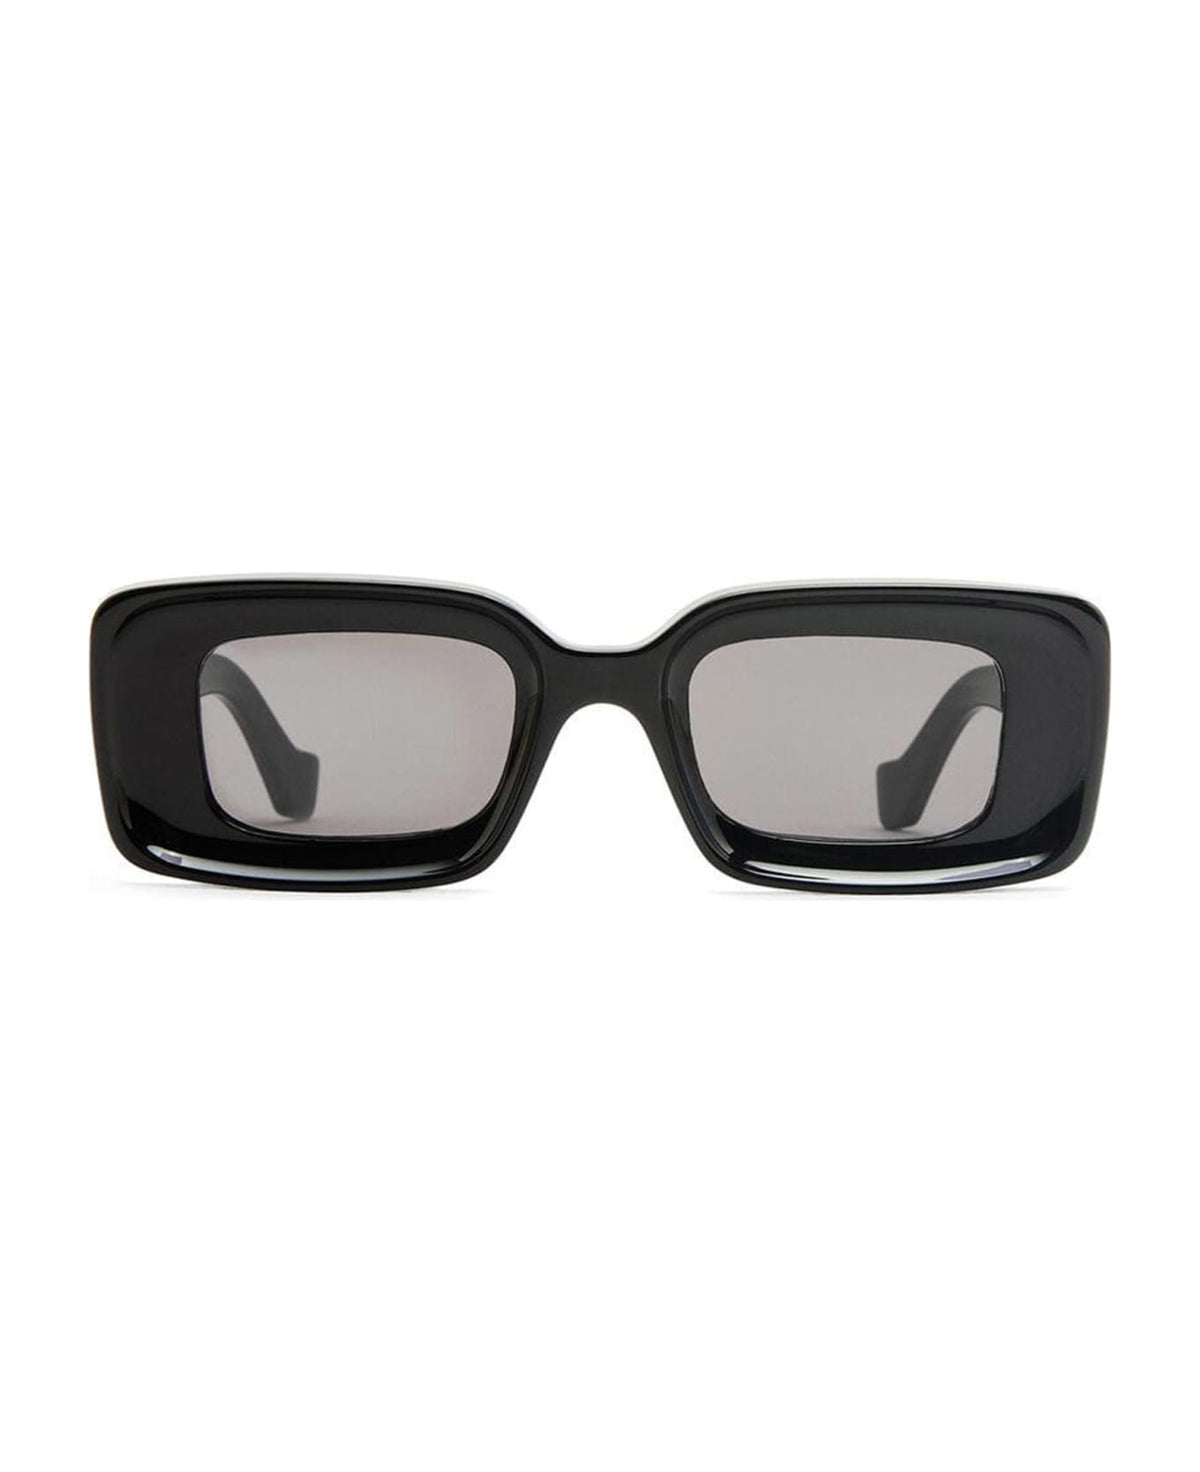 Lw40101i - Black Sunglasses